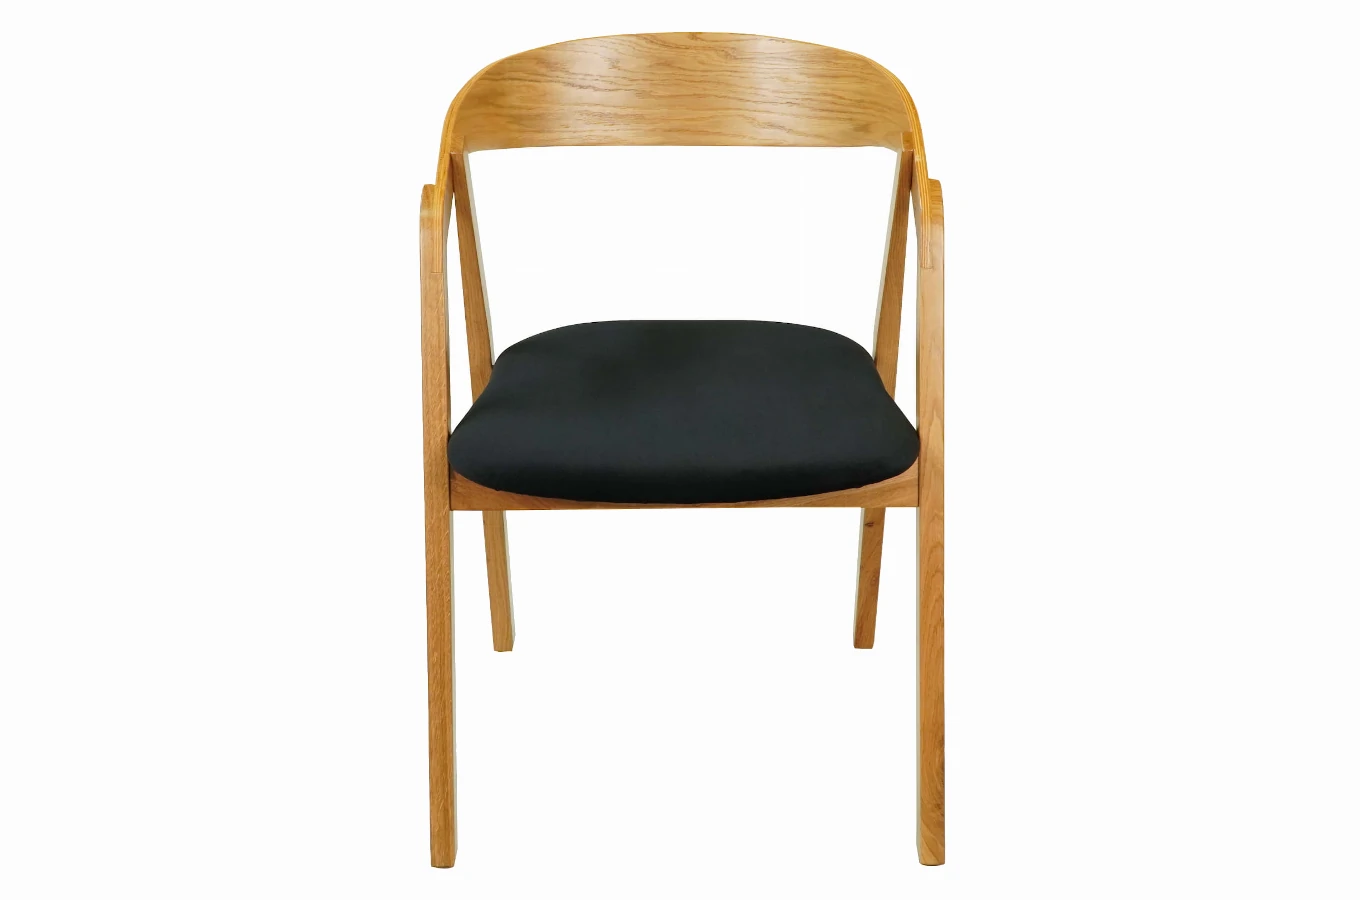 Nowoczesne krzesło dębowe KR-12 do jadalni